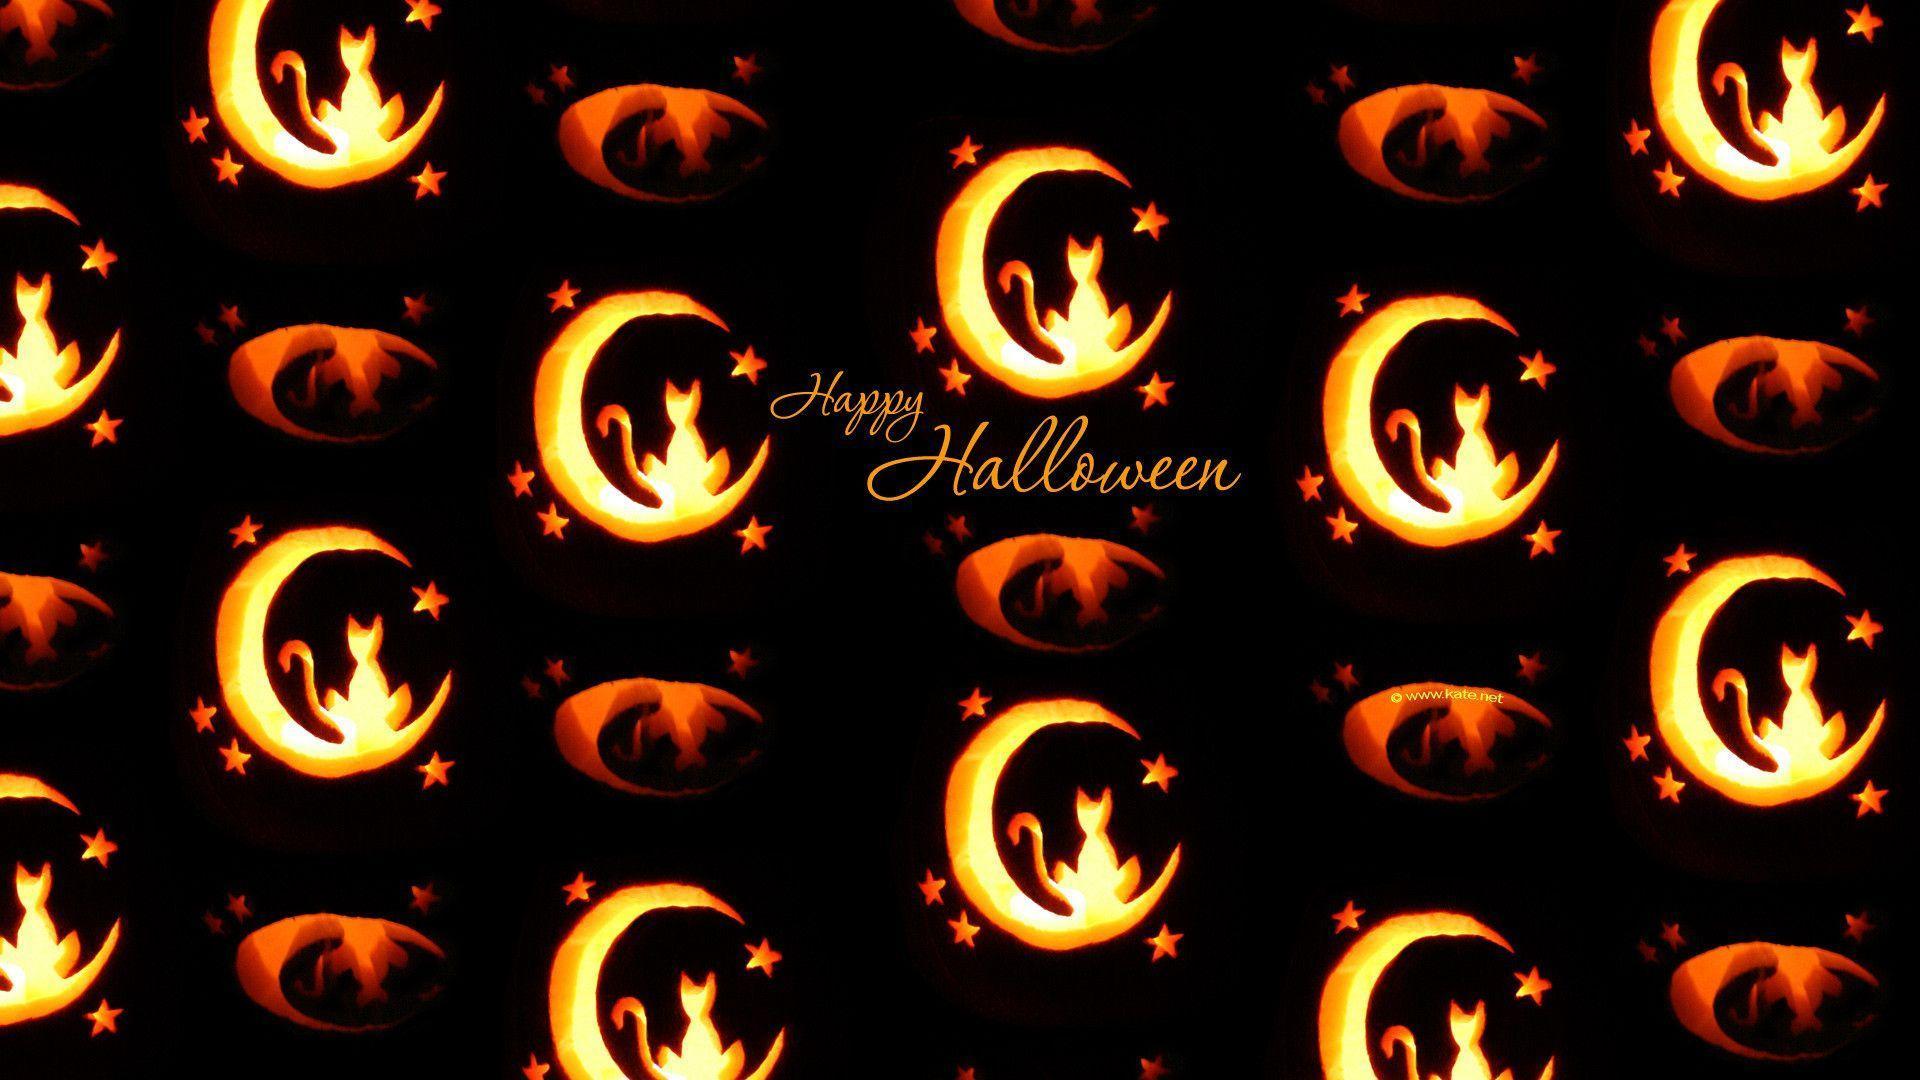 HD Wallpaper Katenet Halloween « wallpaperzwide.com. Free